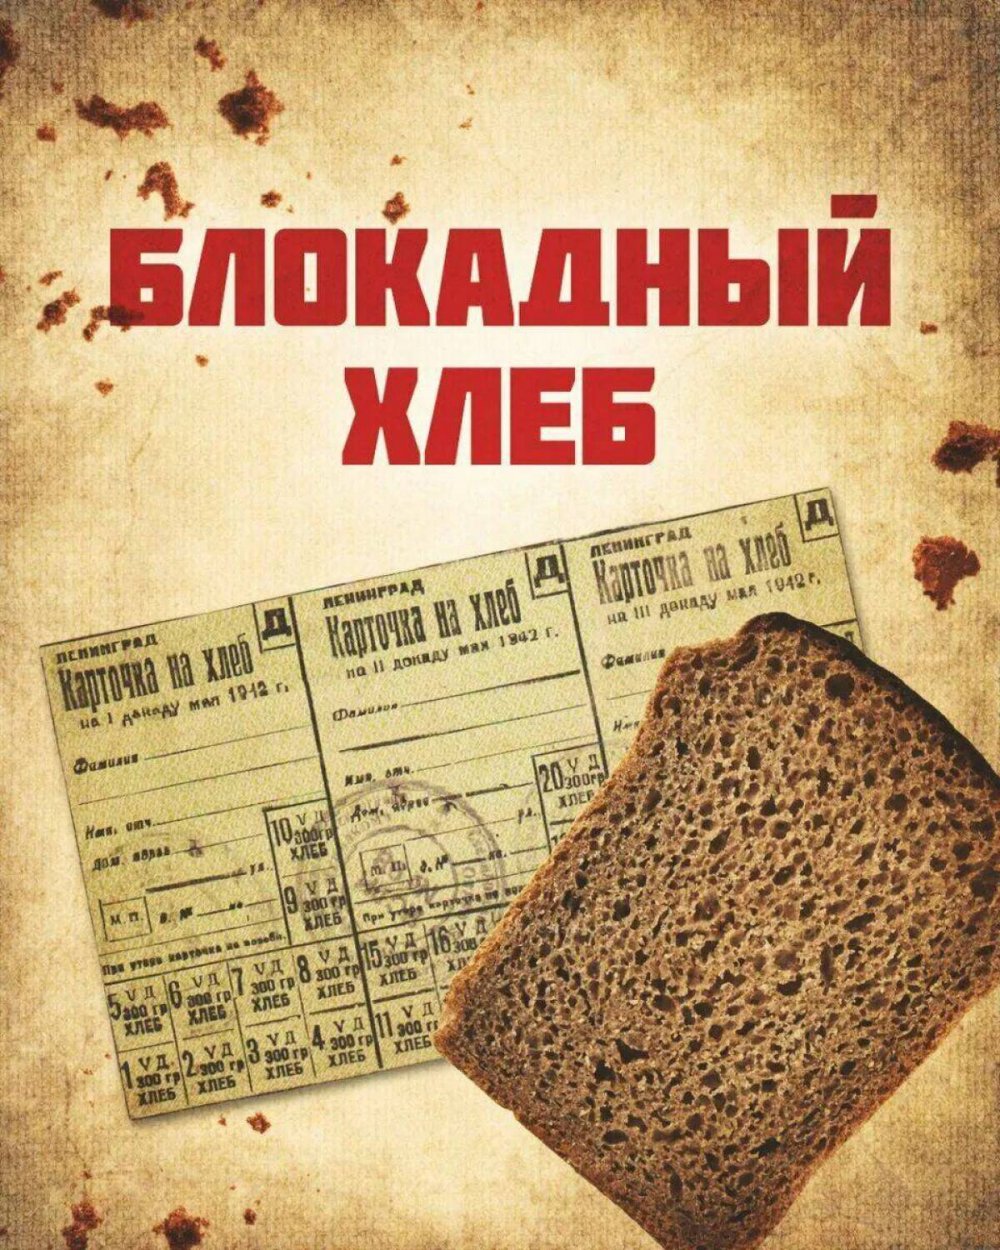 Состав блокадного хлеба